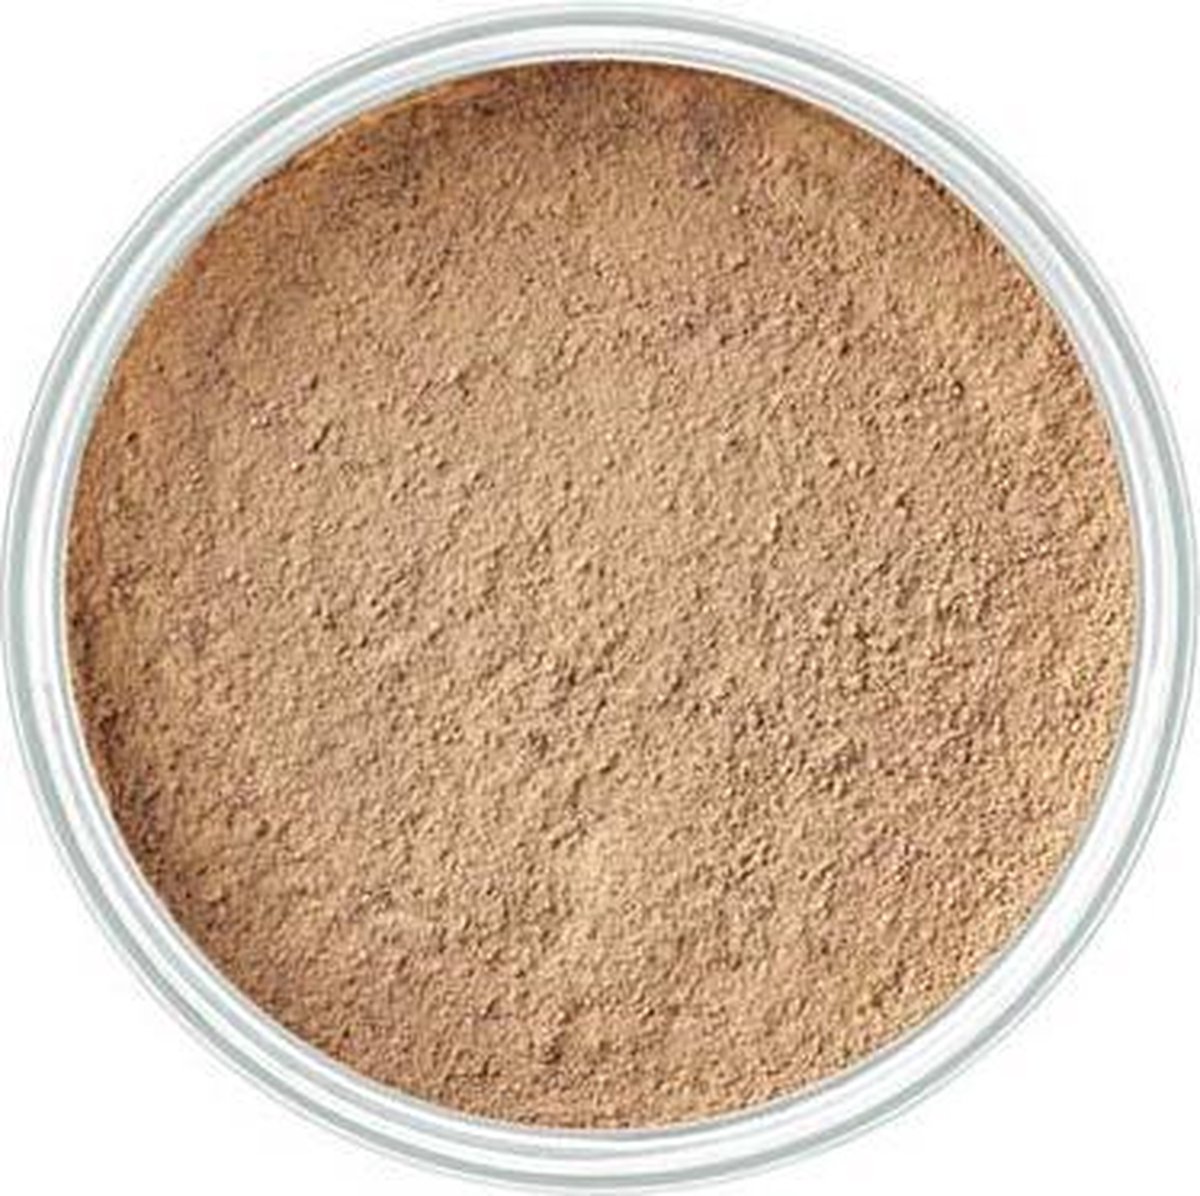 Artdeco mineral powder foundation 3 Light Tan - Artdeco Make-up